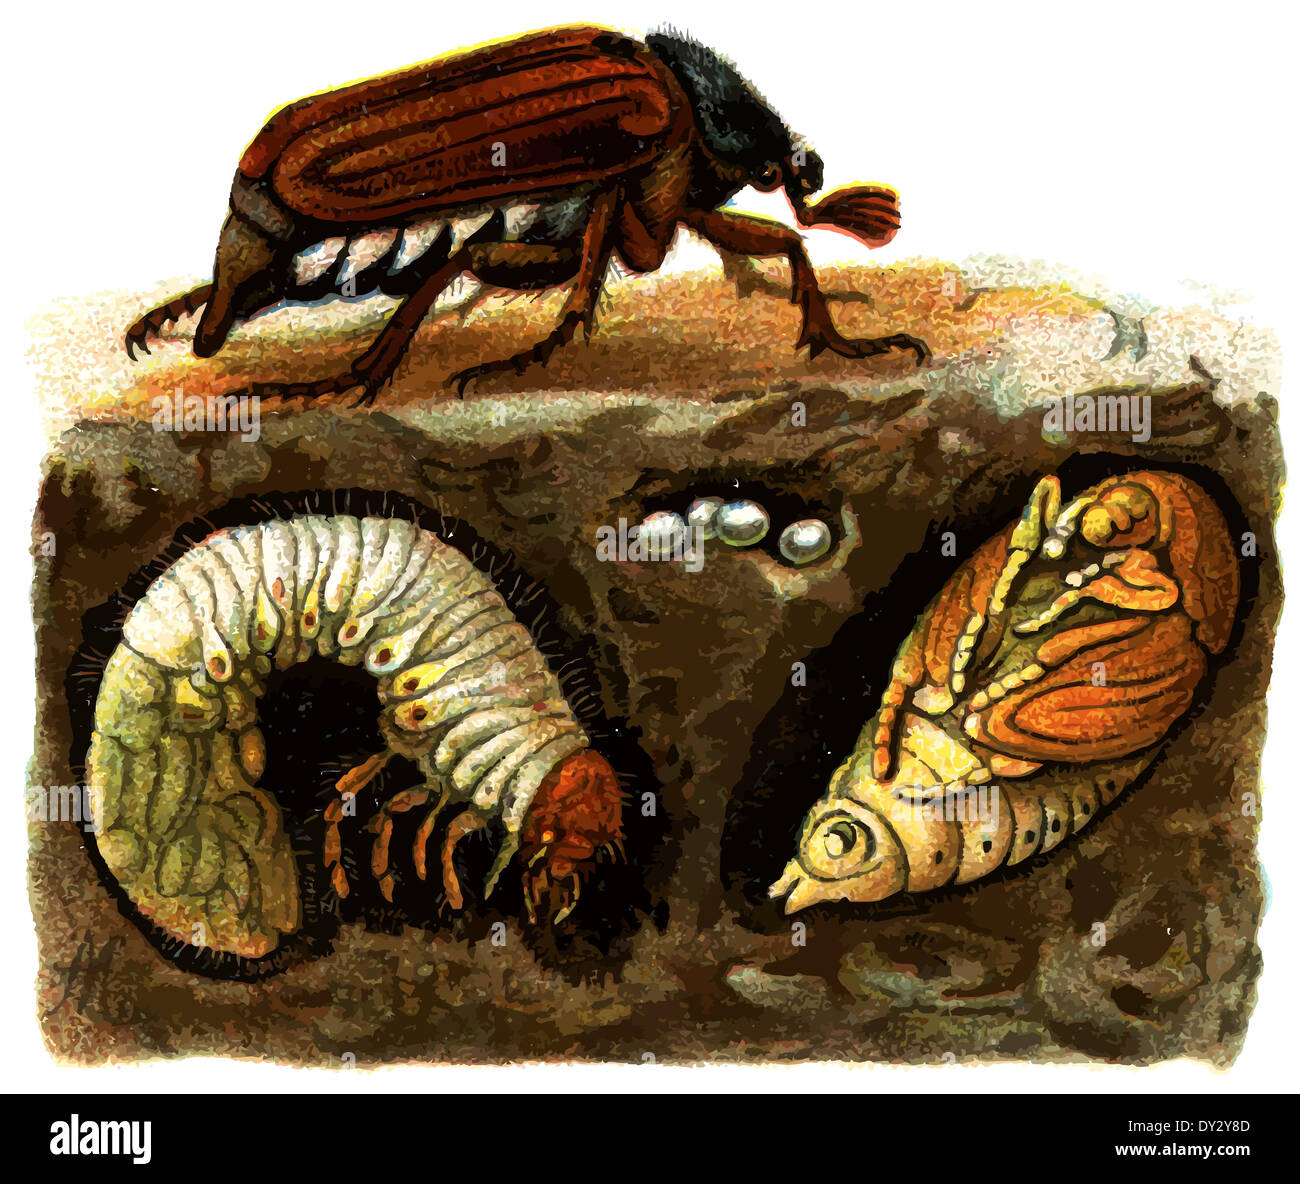 Майские жуки среда обитания. Среда обитания майского жука. Подземные насекомые. Личинка майского жука. Насекомые в почвенной среде.